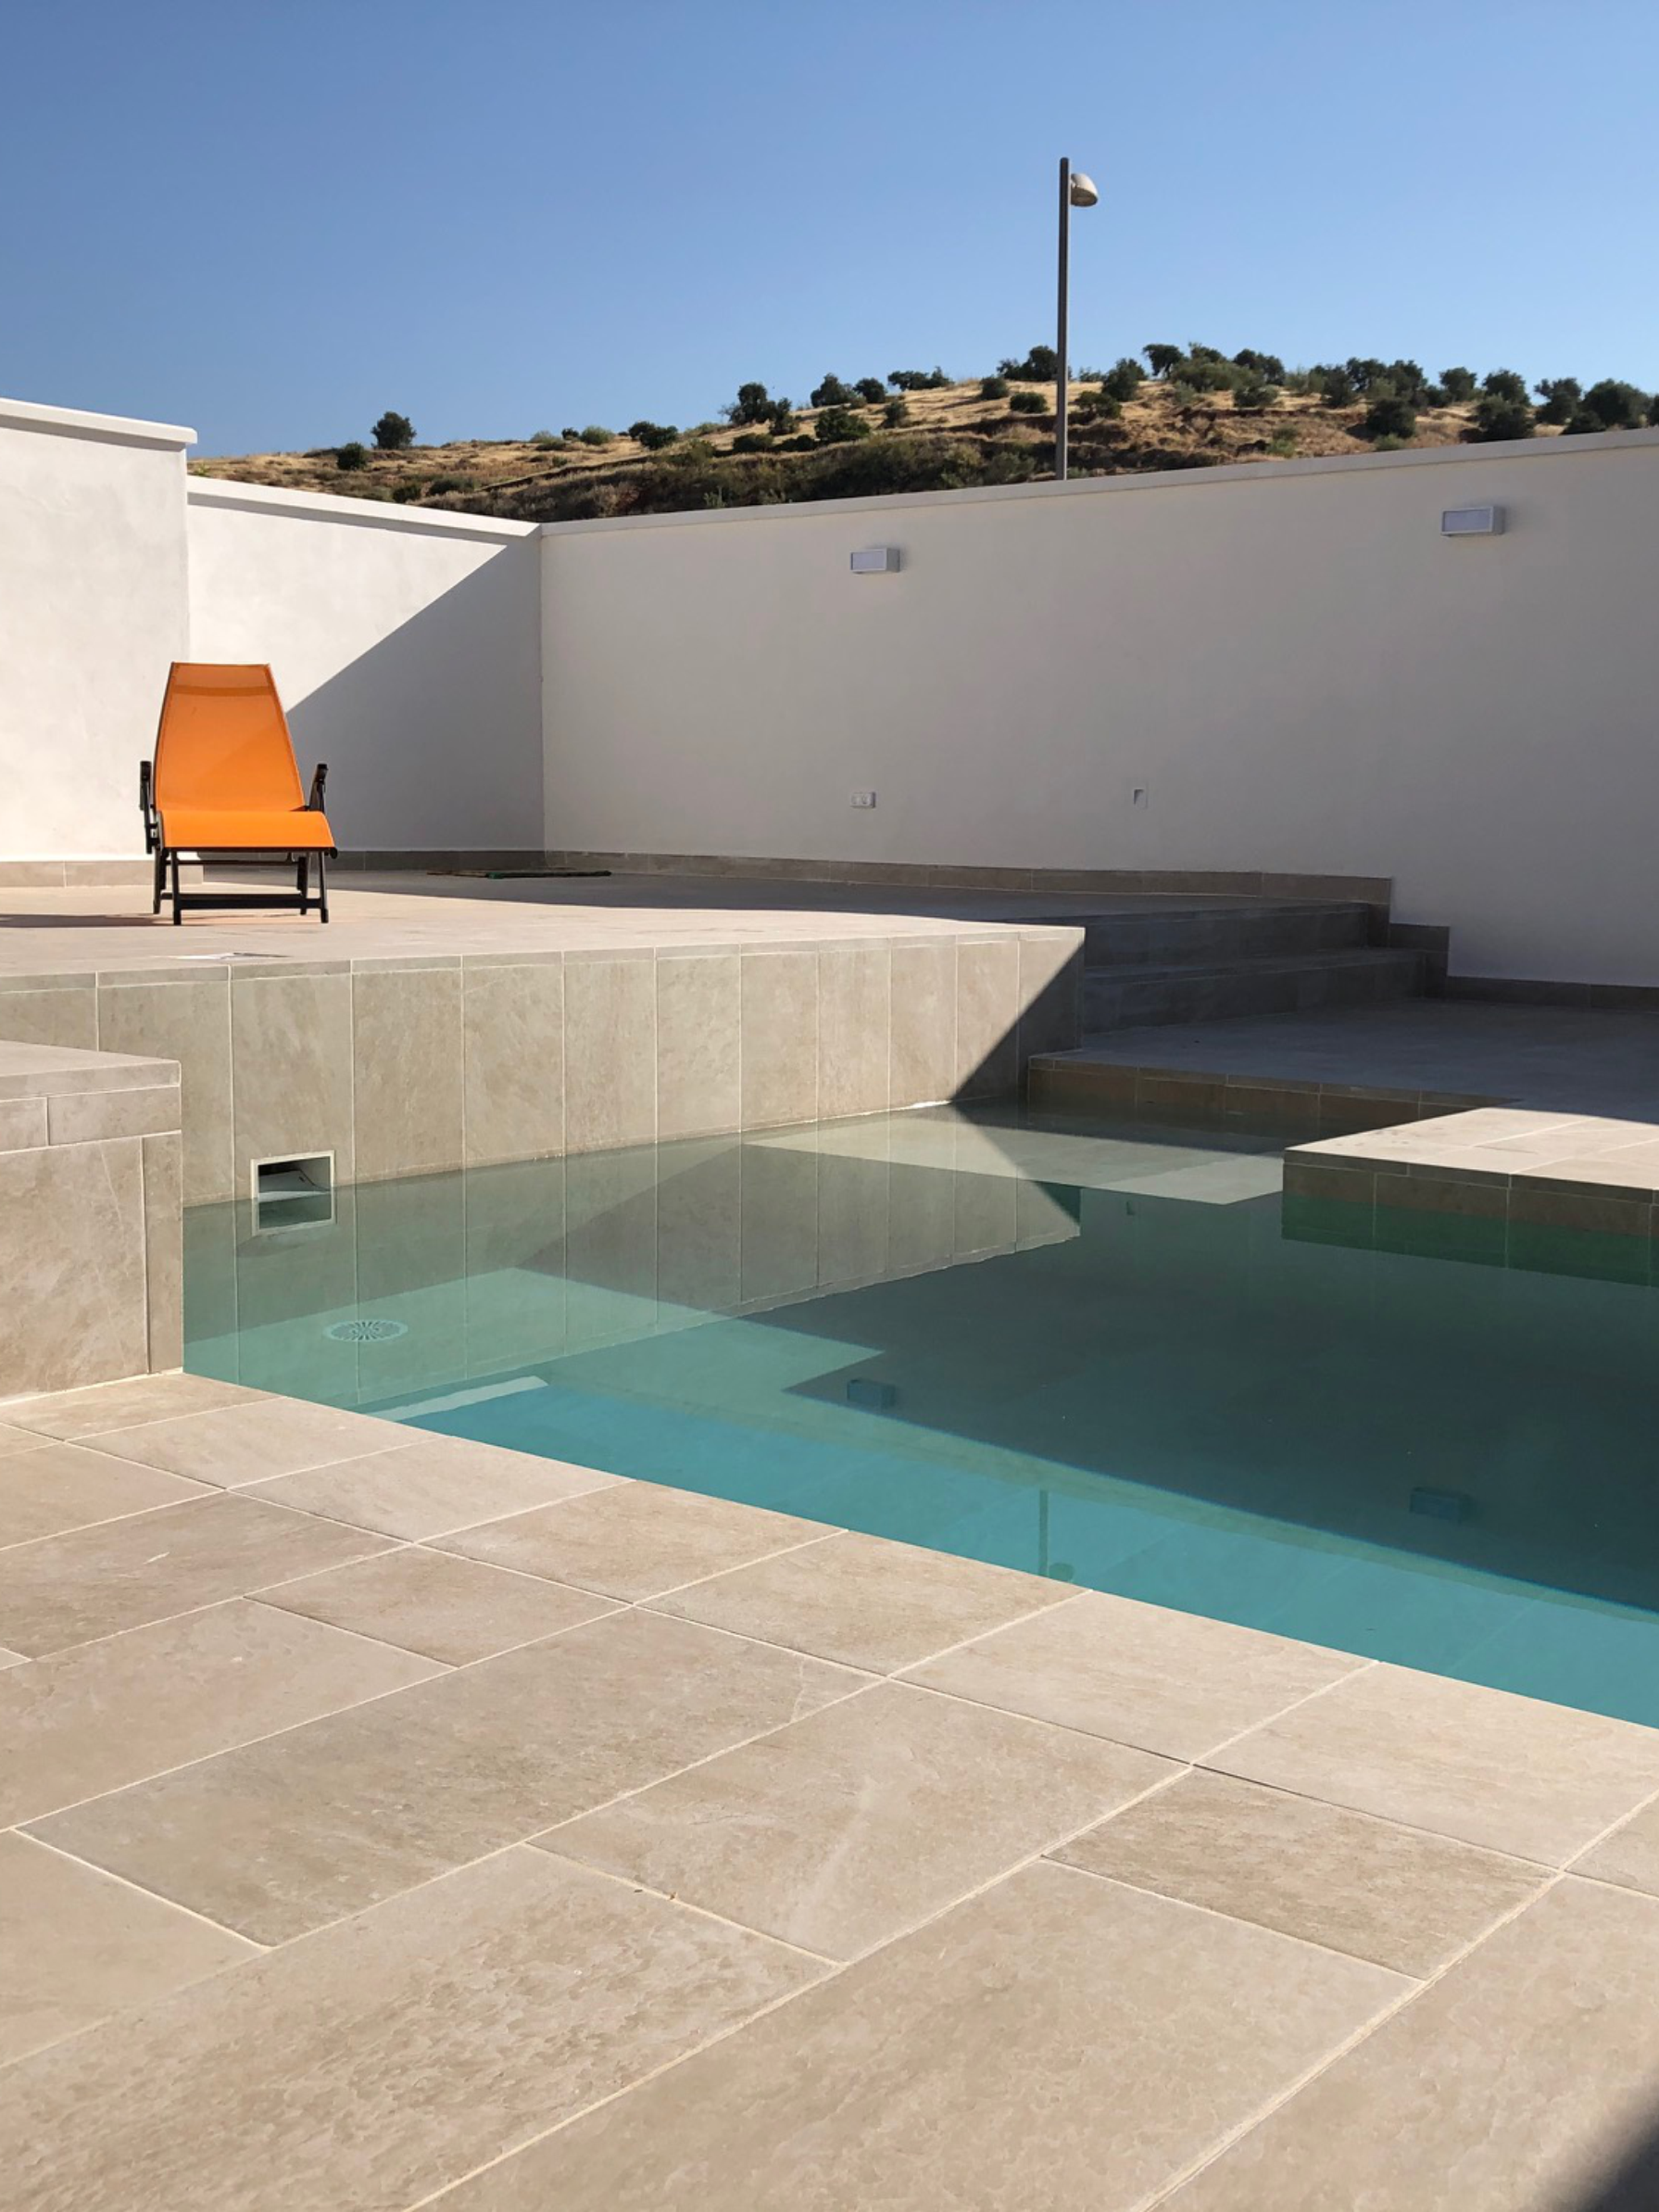 Ampliación de espacios exteriores y piscina. Granada 2018